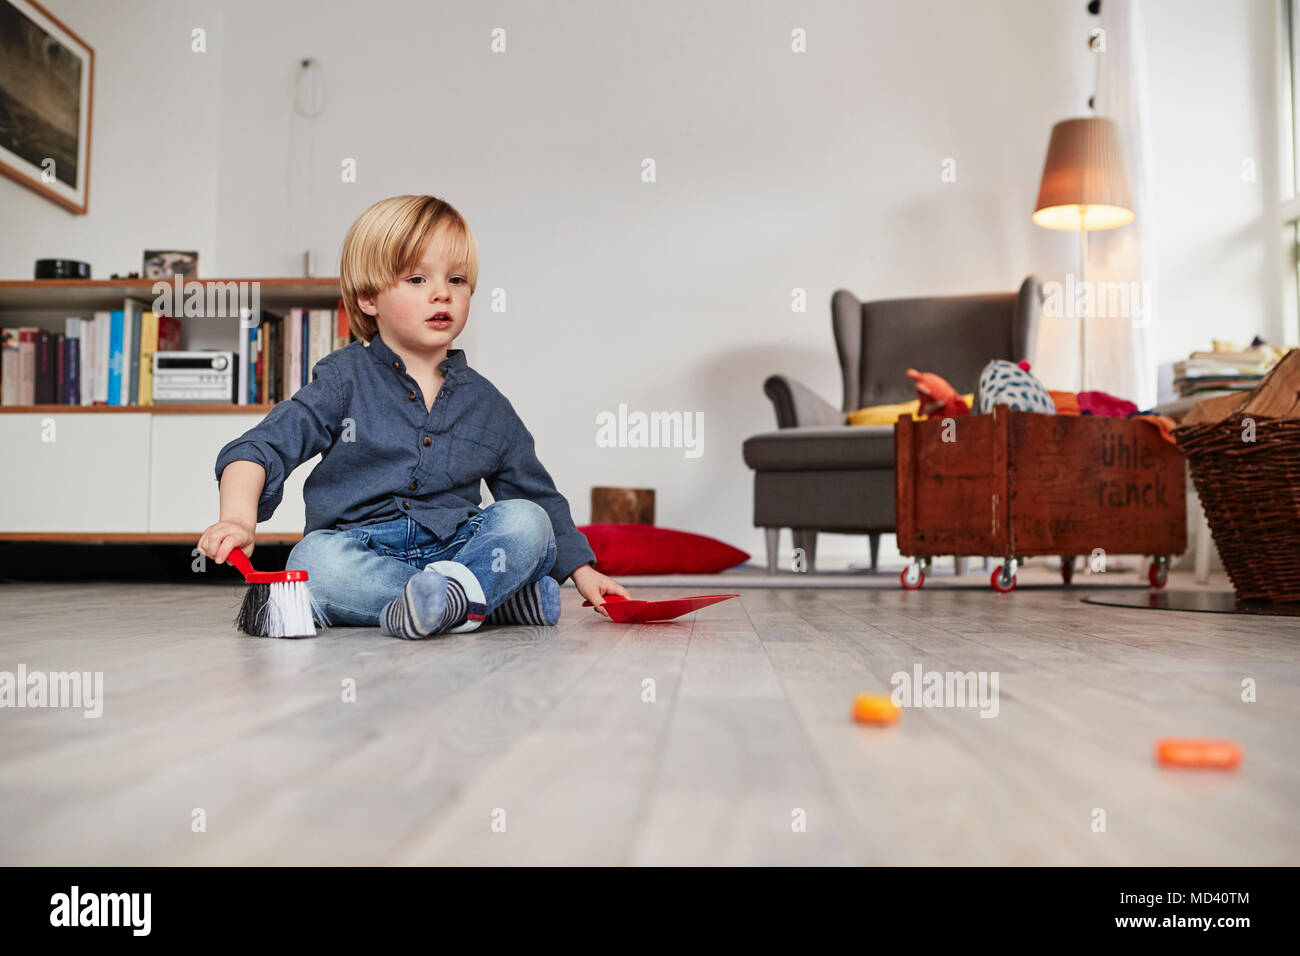 Junge Junge sitzt auf dem Boden, holding Spielzeug Handfeger und Kehrblech Stockfoto